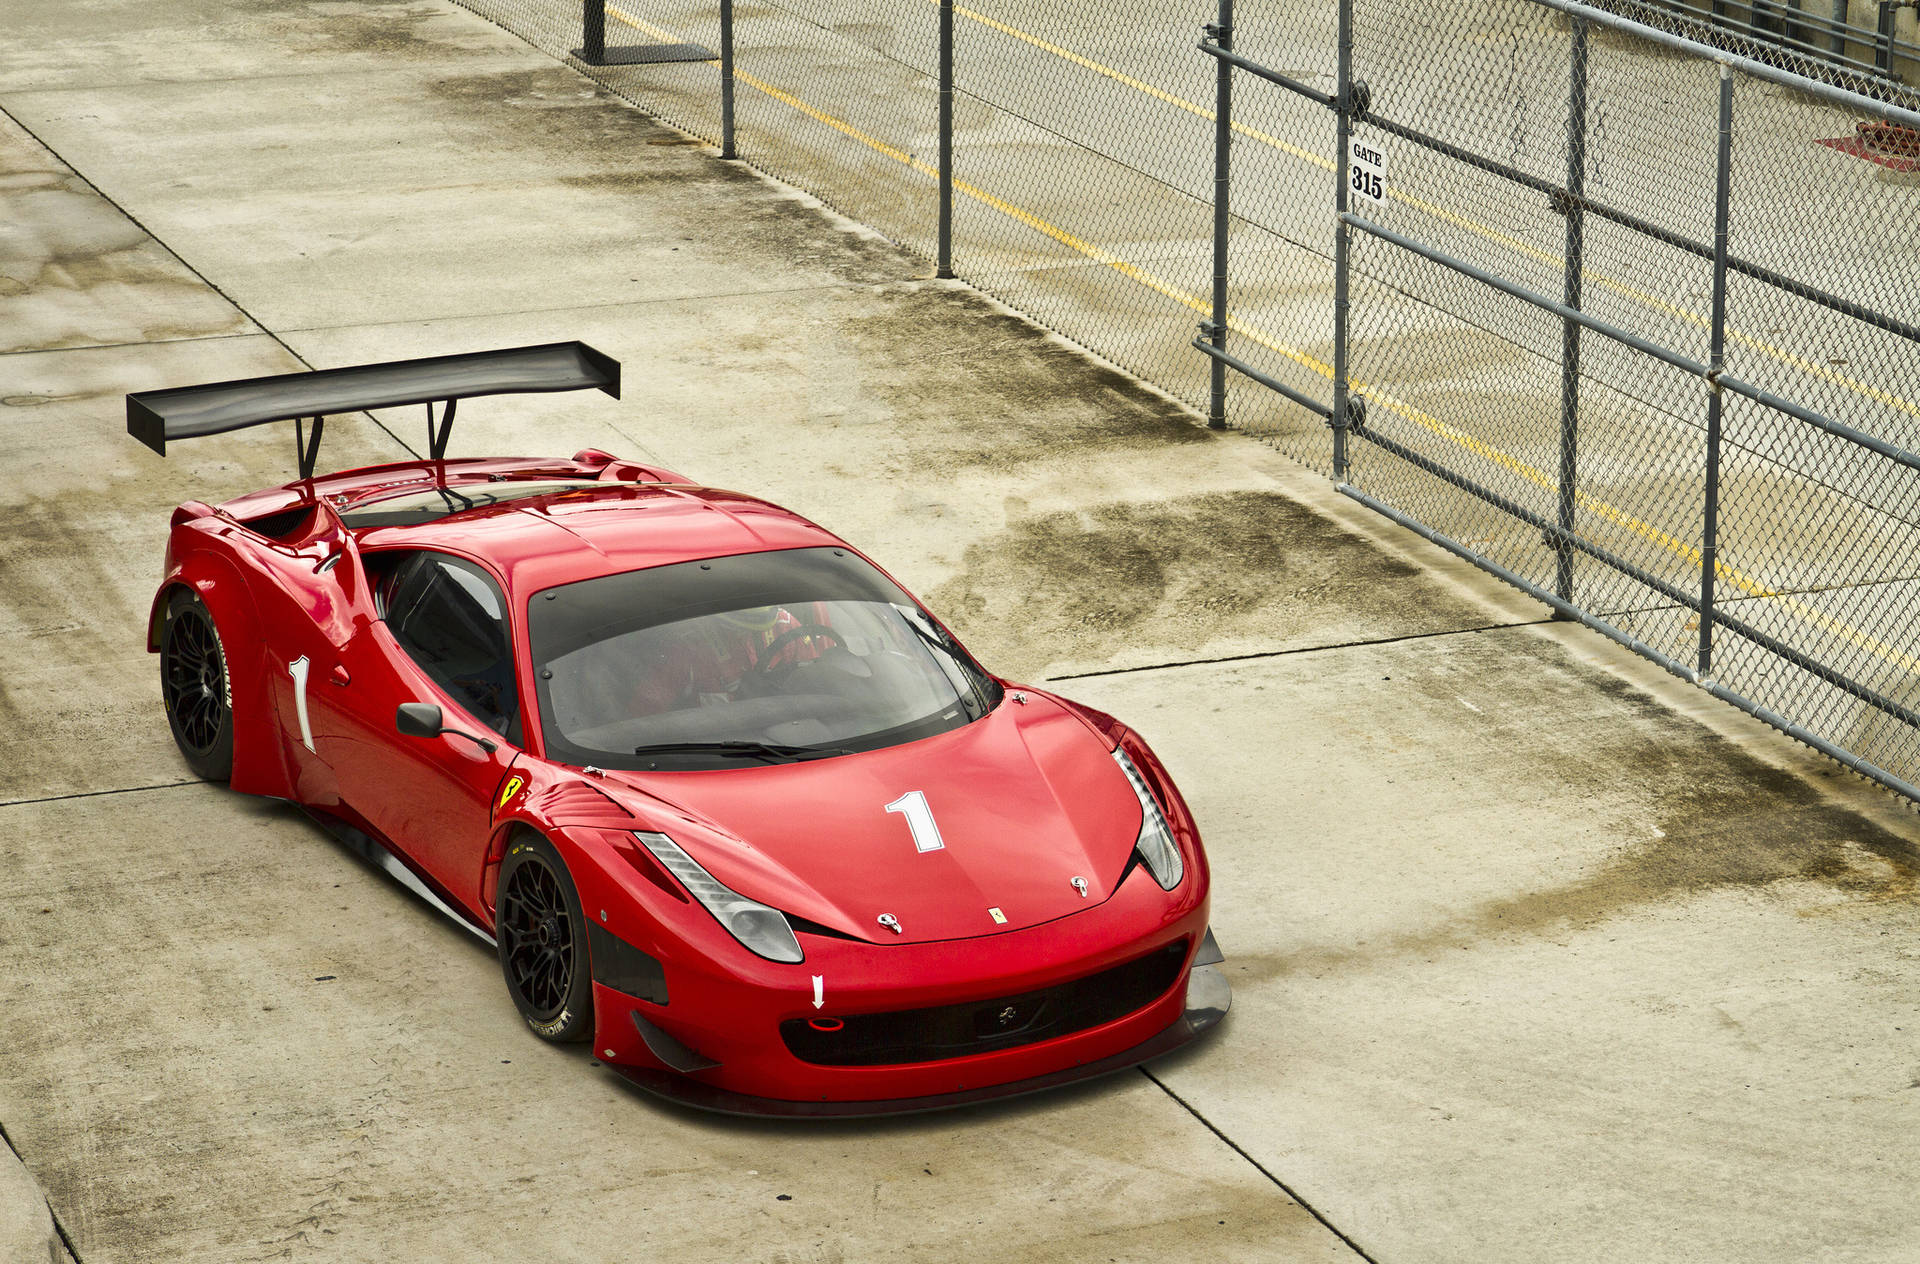 4k Ferrari Red Sports Car Wallpaper